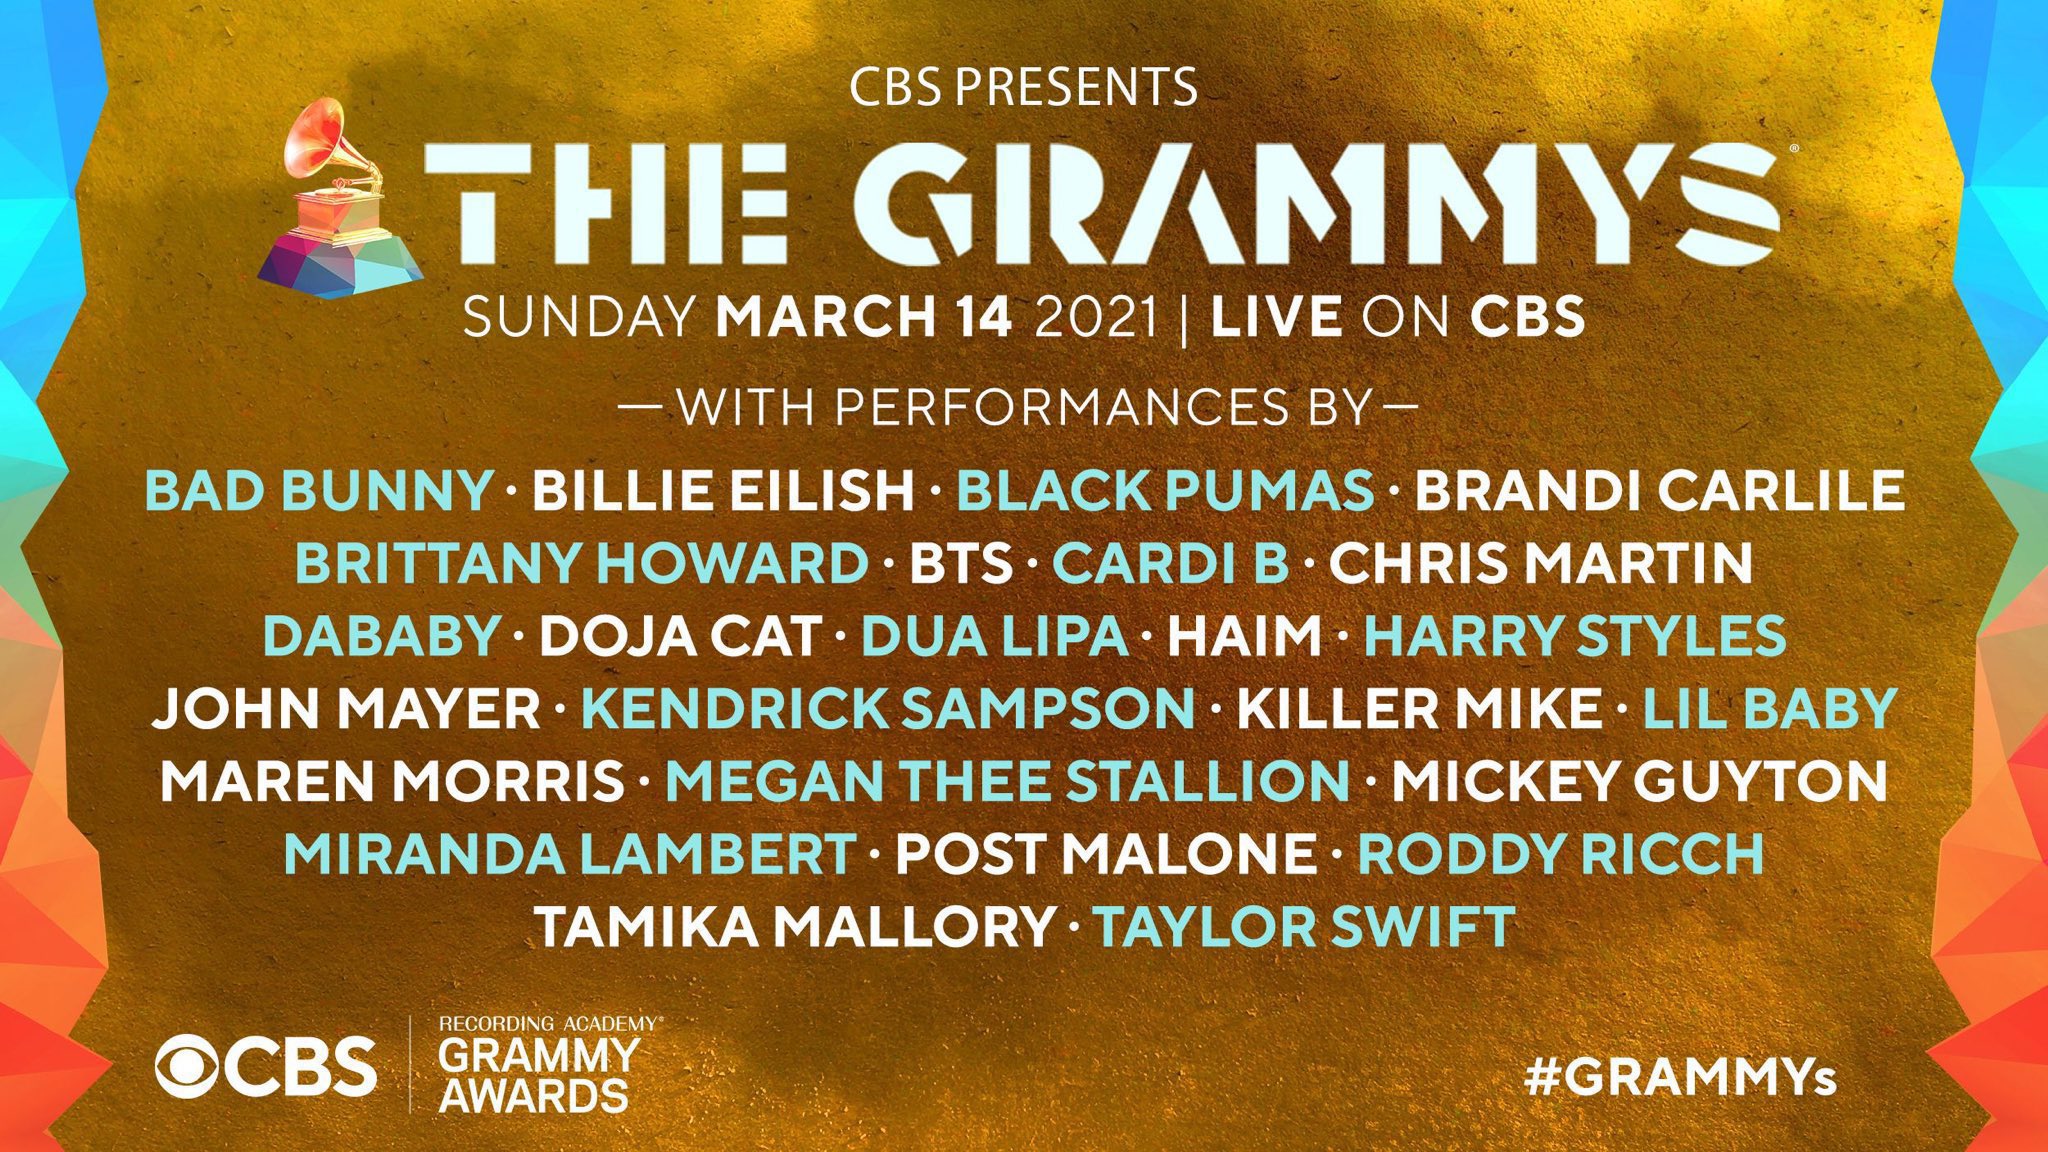 Chris Martin (Coldplay), Post Malone, Billie Eilish, e mais, se apresentam no Grammy Awards 2021 neste domingo